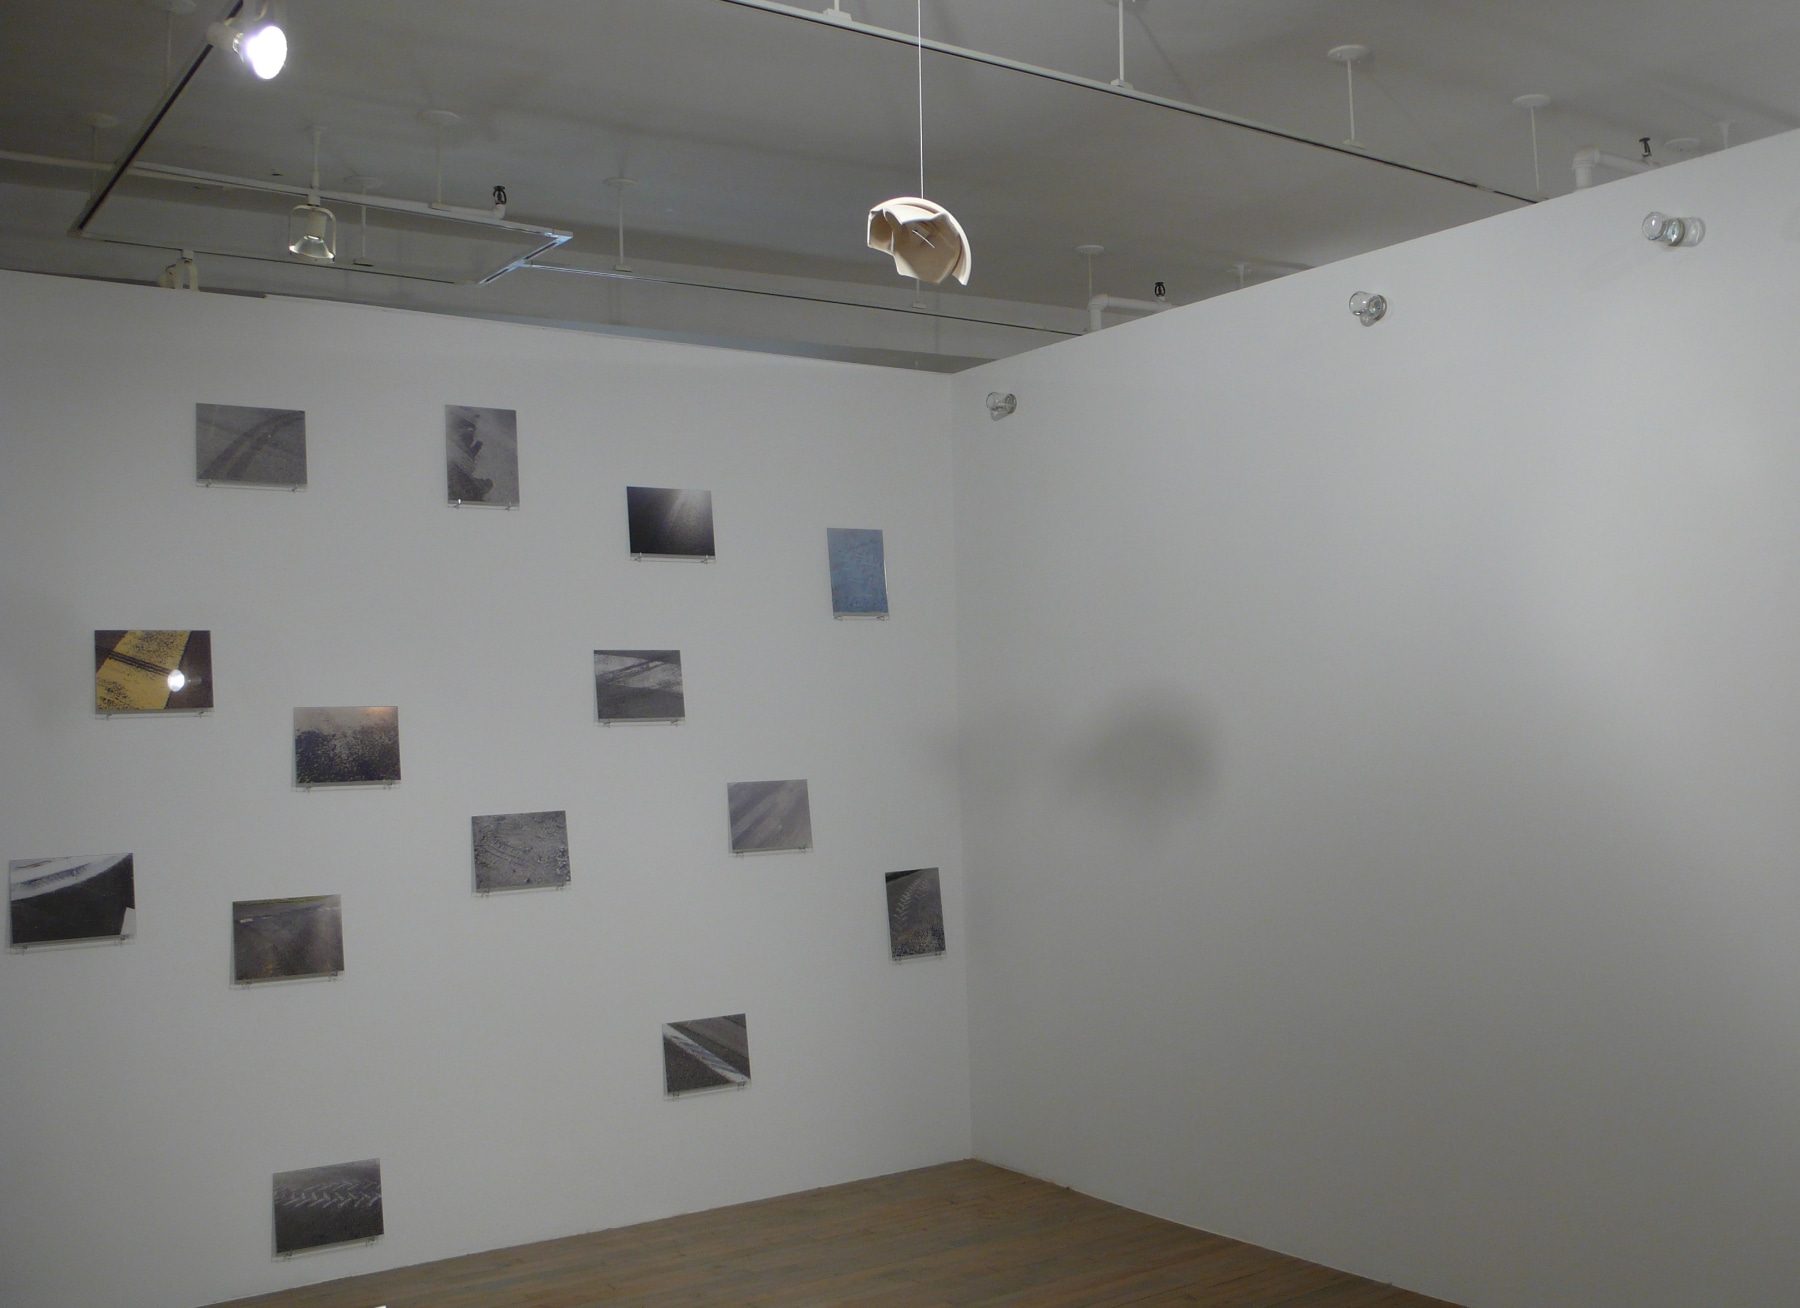 Richard Wentworth &ndash; installation view 5